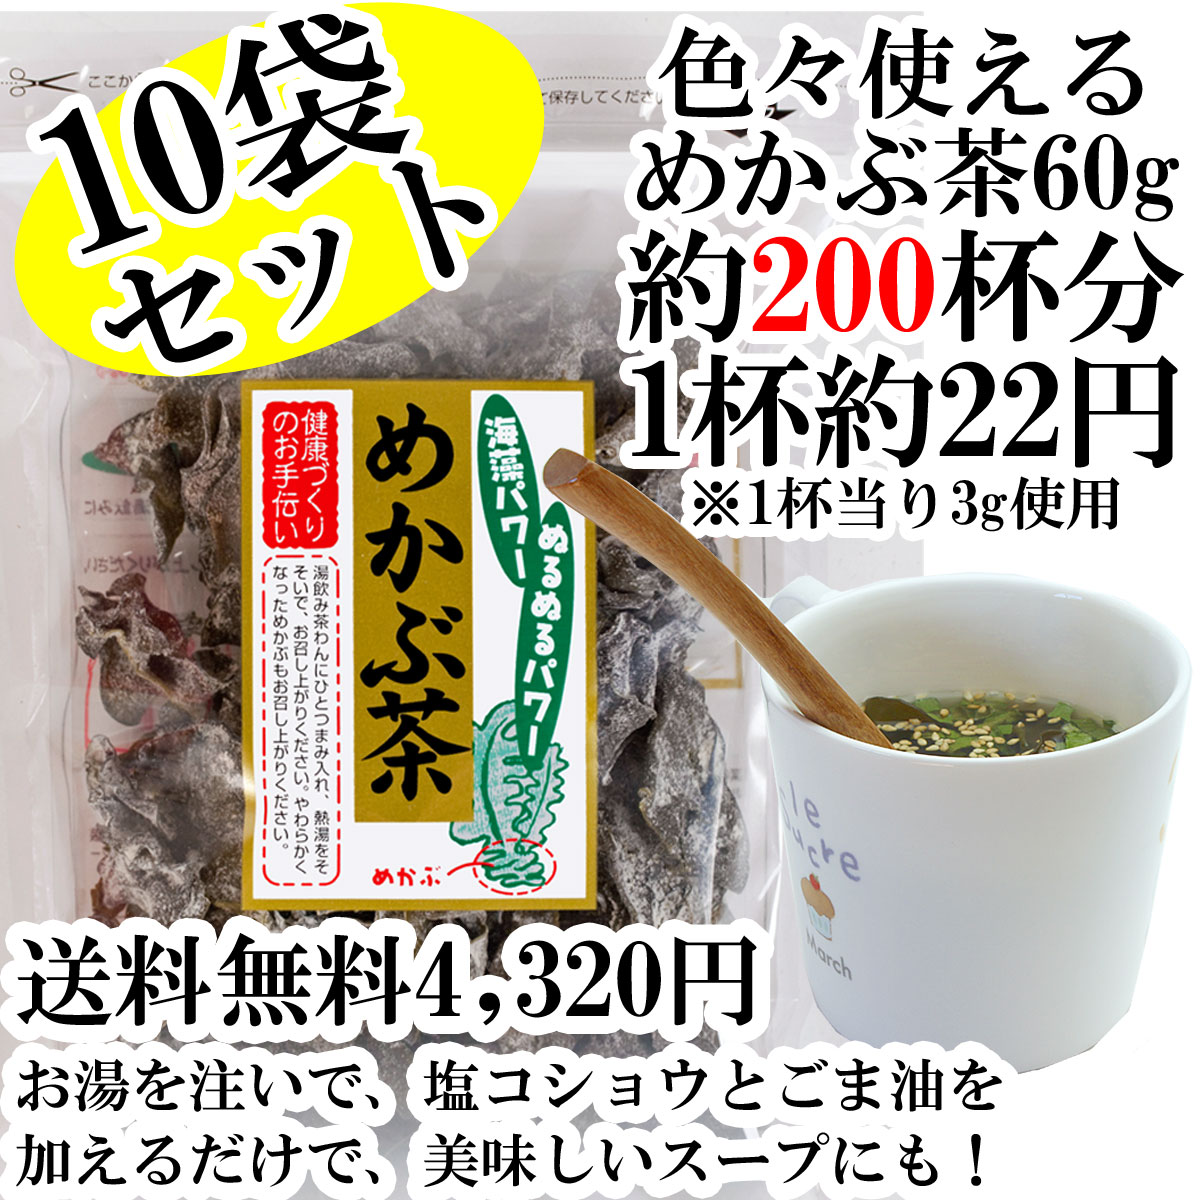 めかぶ茶 送料無料、10袋セット乾燥メカブのお茶食物繊維・フコイダンを含む健康茶。【RCP】...:ajizukuri:10000071